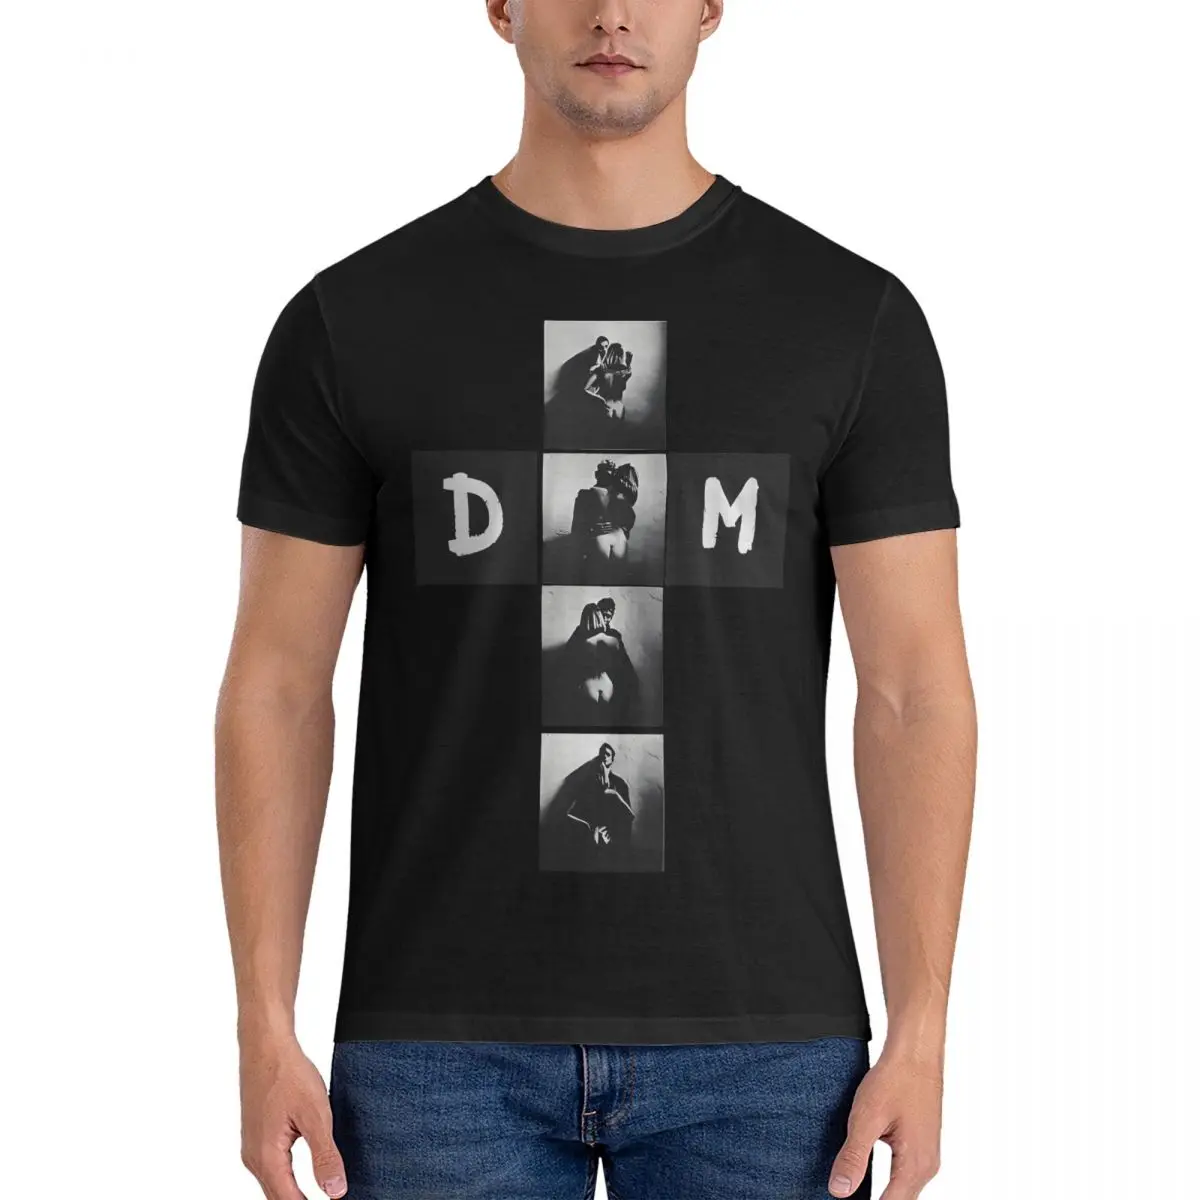 

Мужские футболки с музыкантом 2023, Забавные футболки из 100% хлопка, футболки Depeche Modee с коротким рукавом и круглым вырезом, идея для подарка